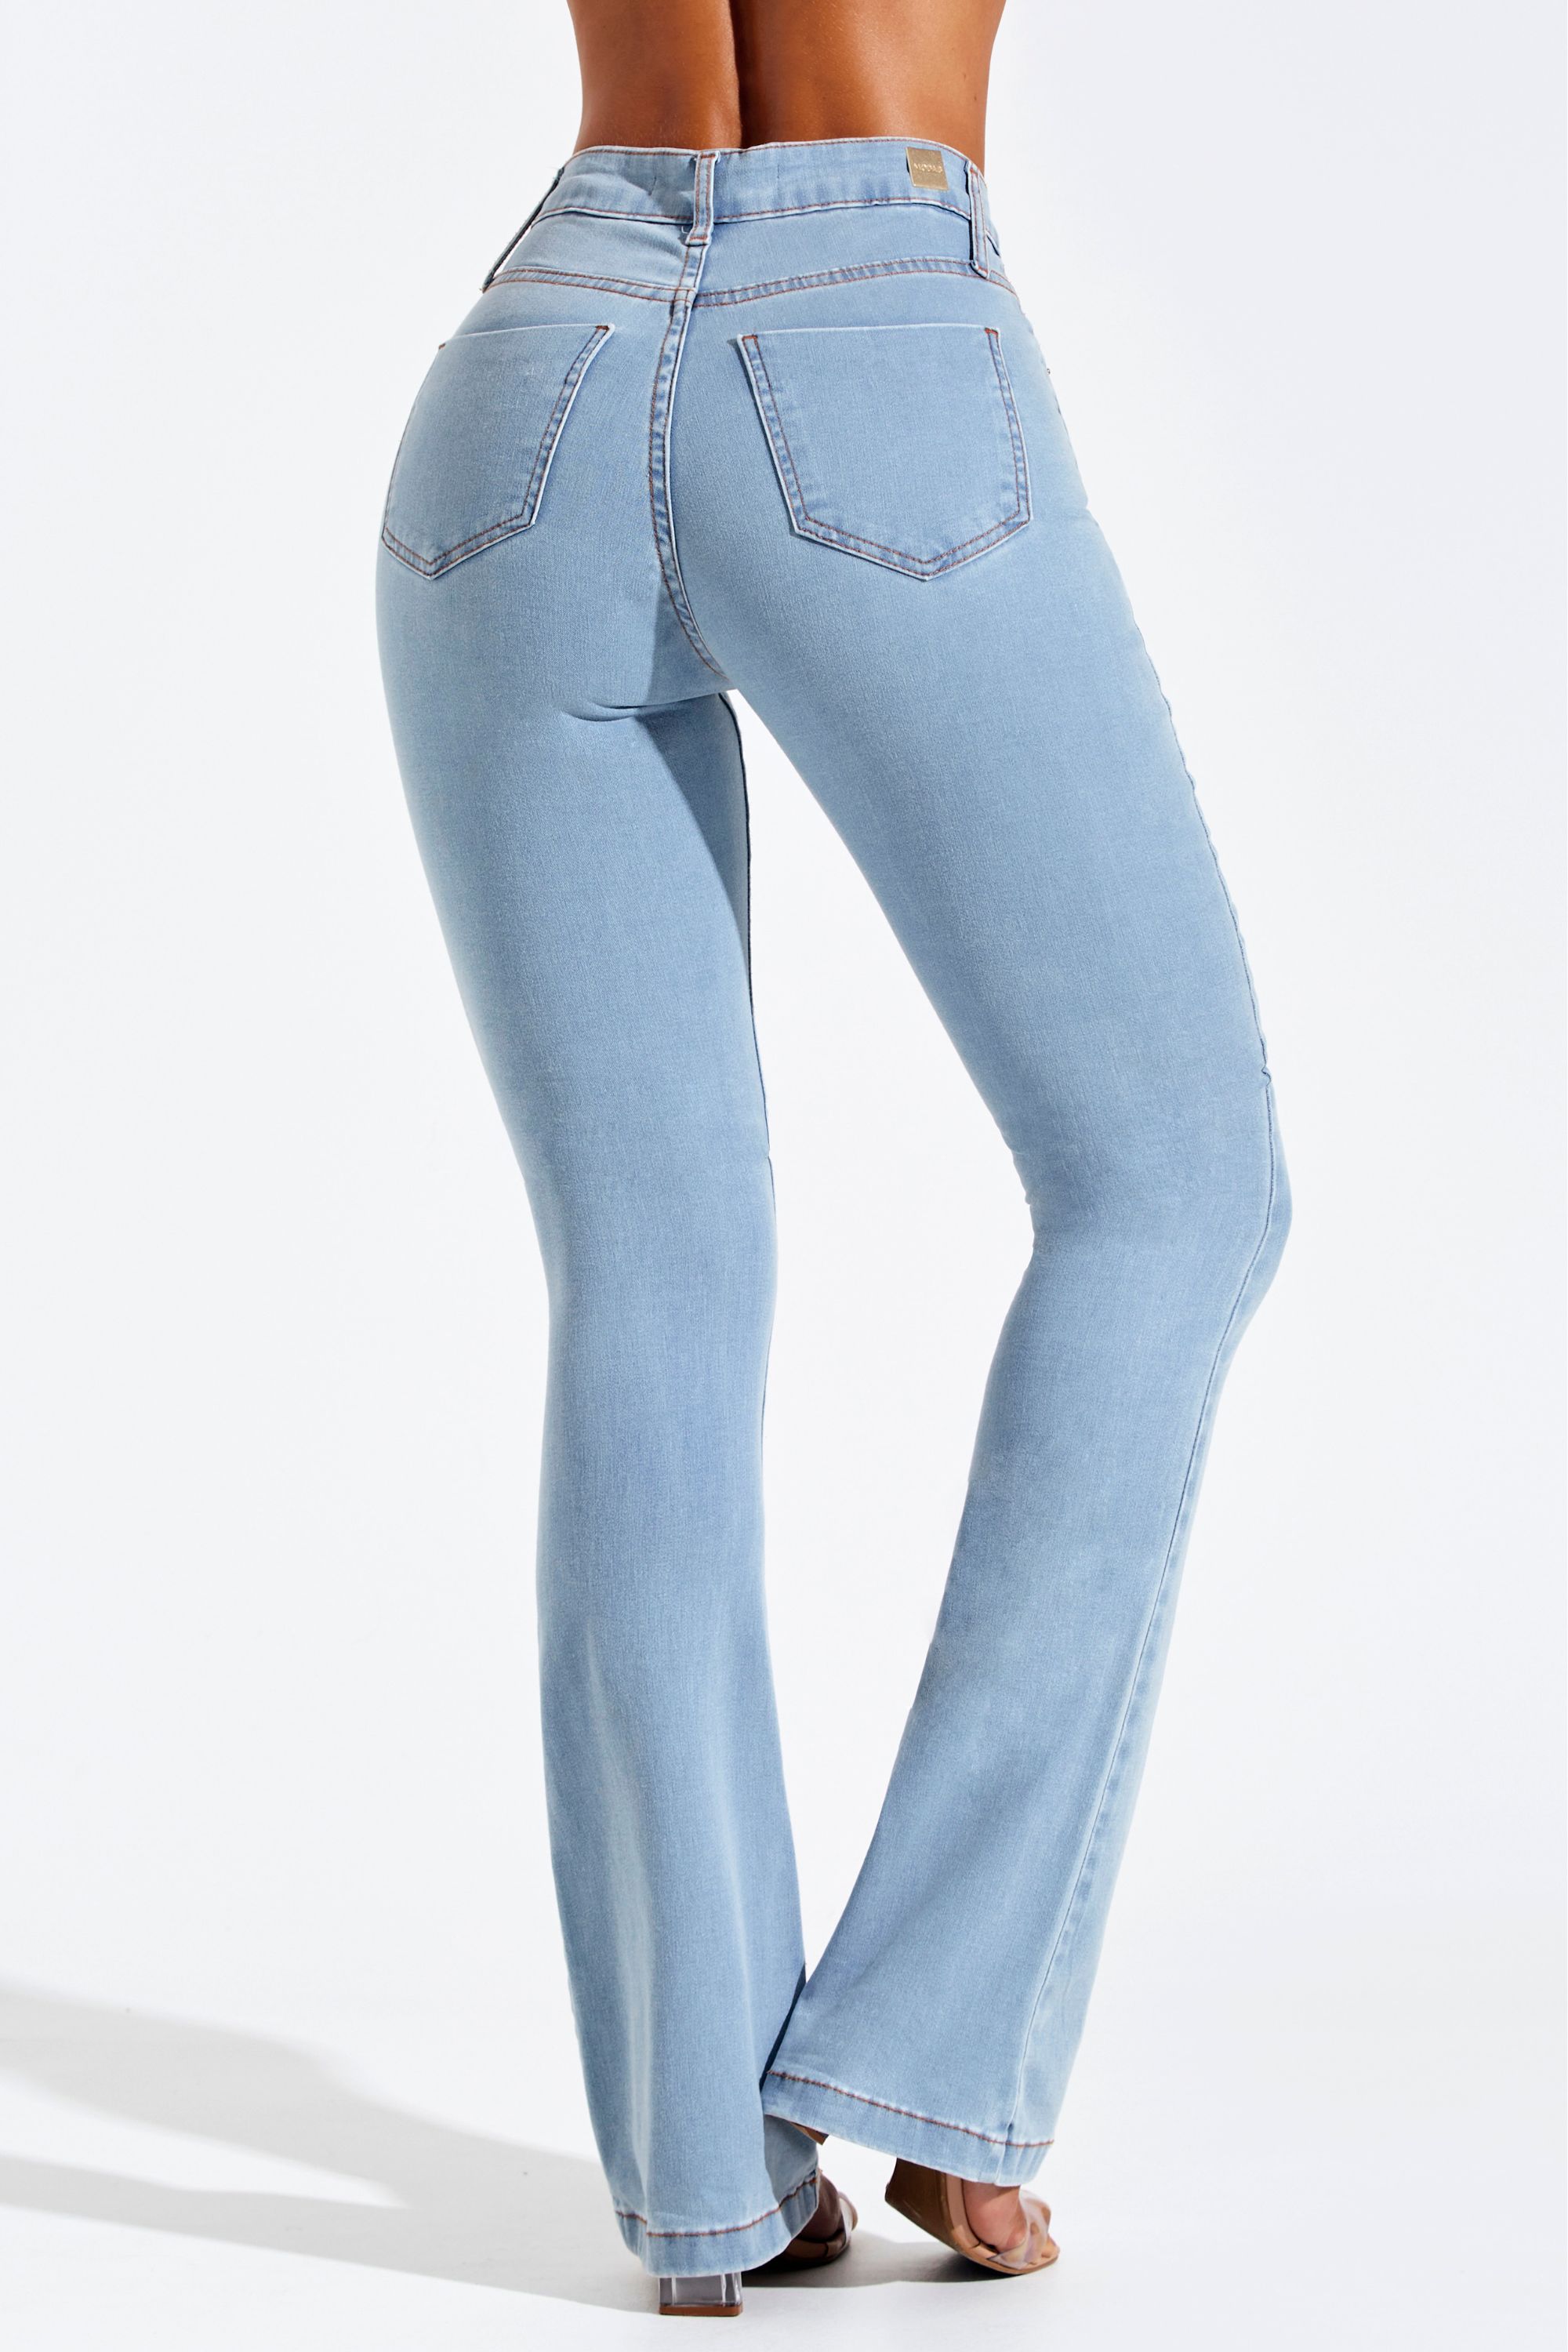 Calça Modeladora Jeans Skinny Cós Duo - BRYSS